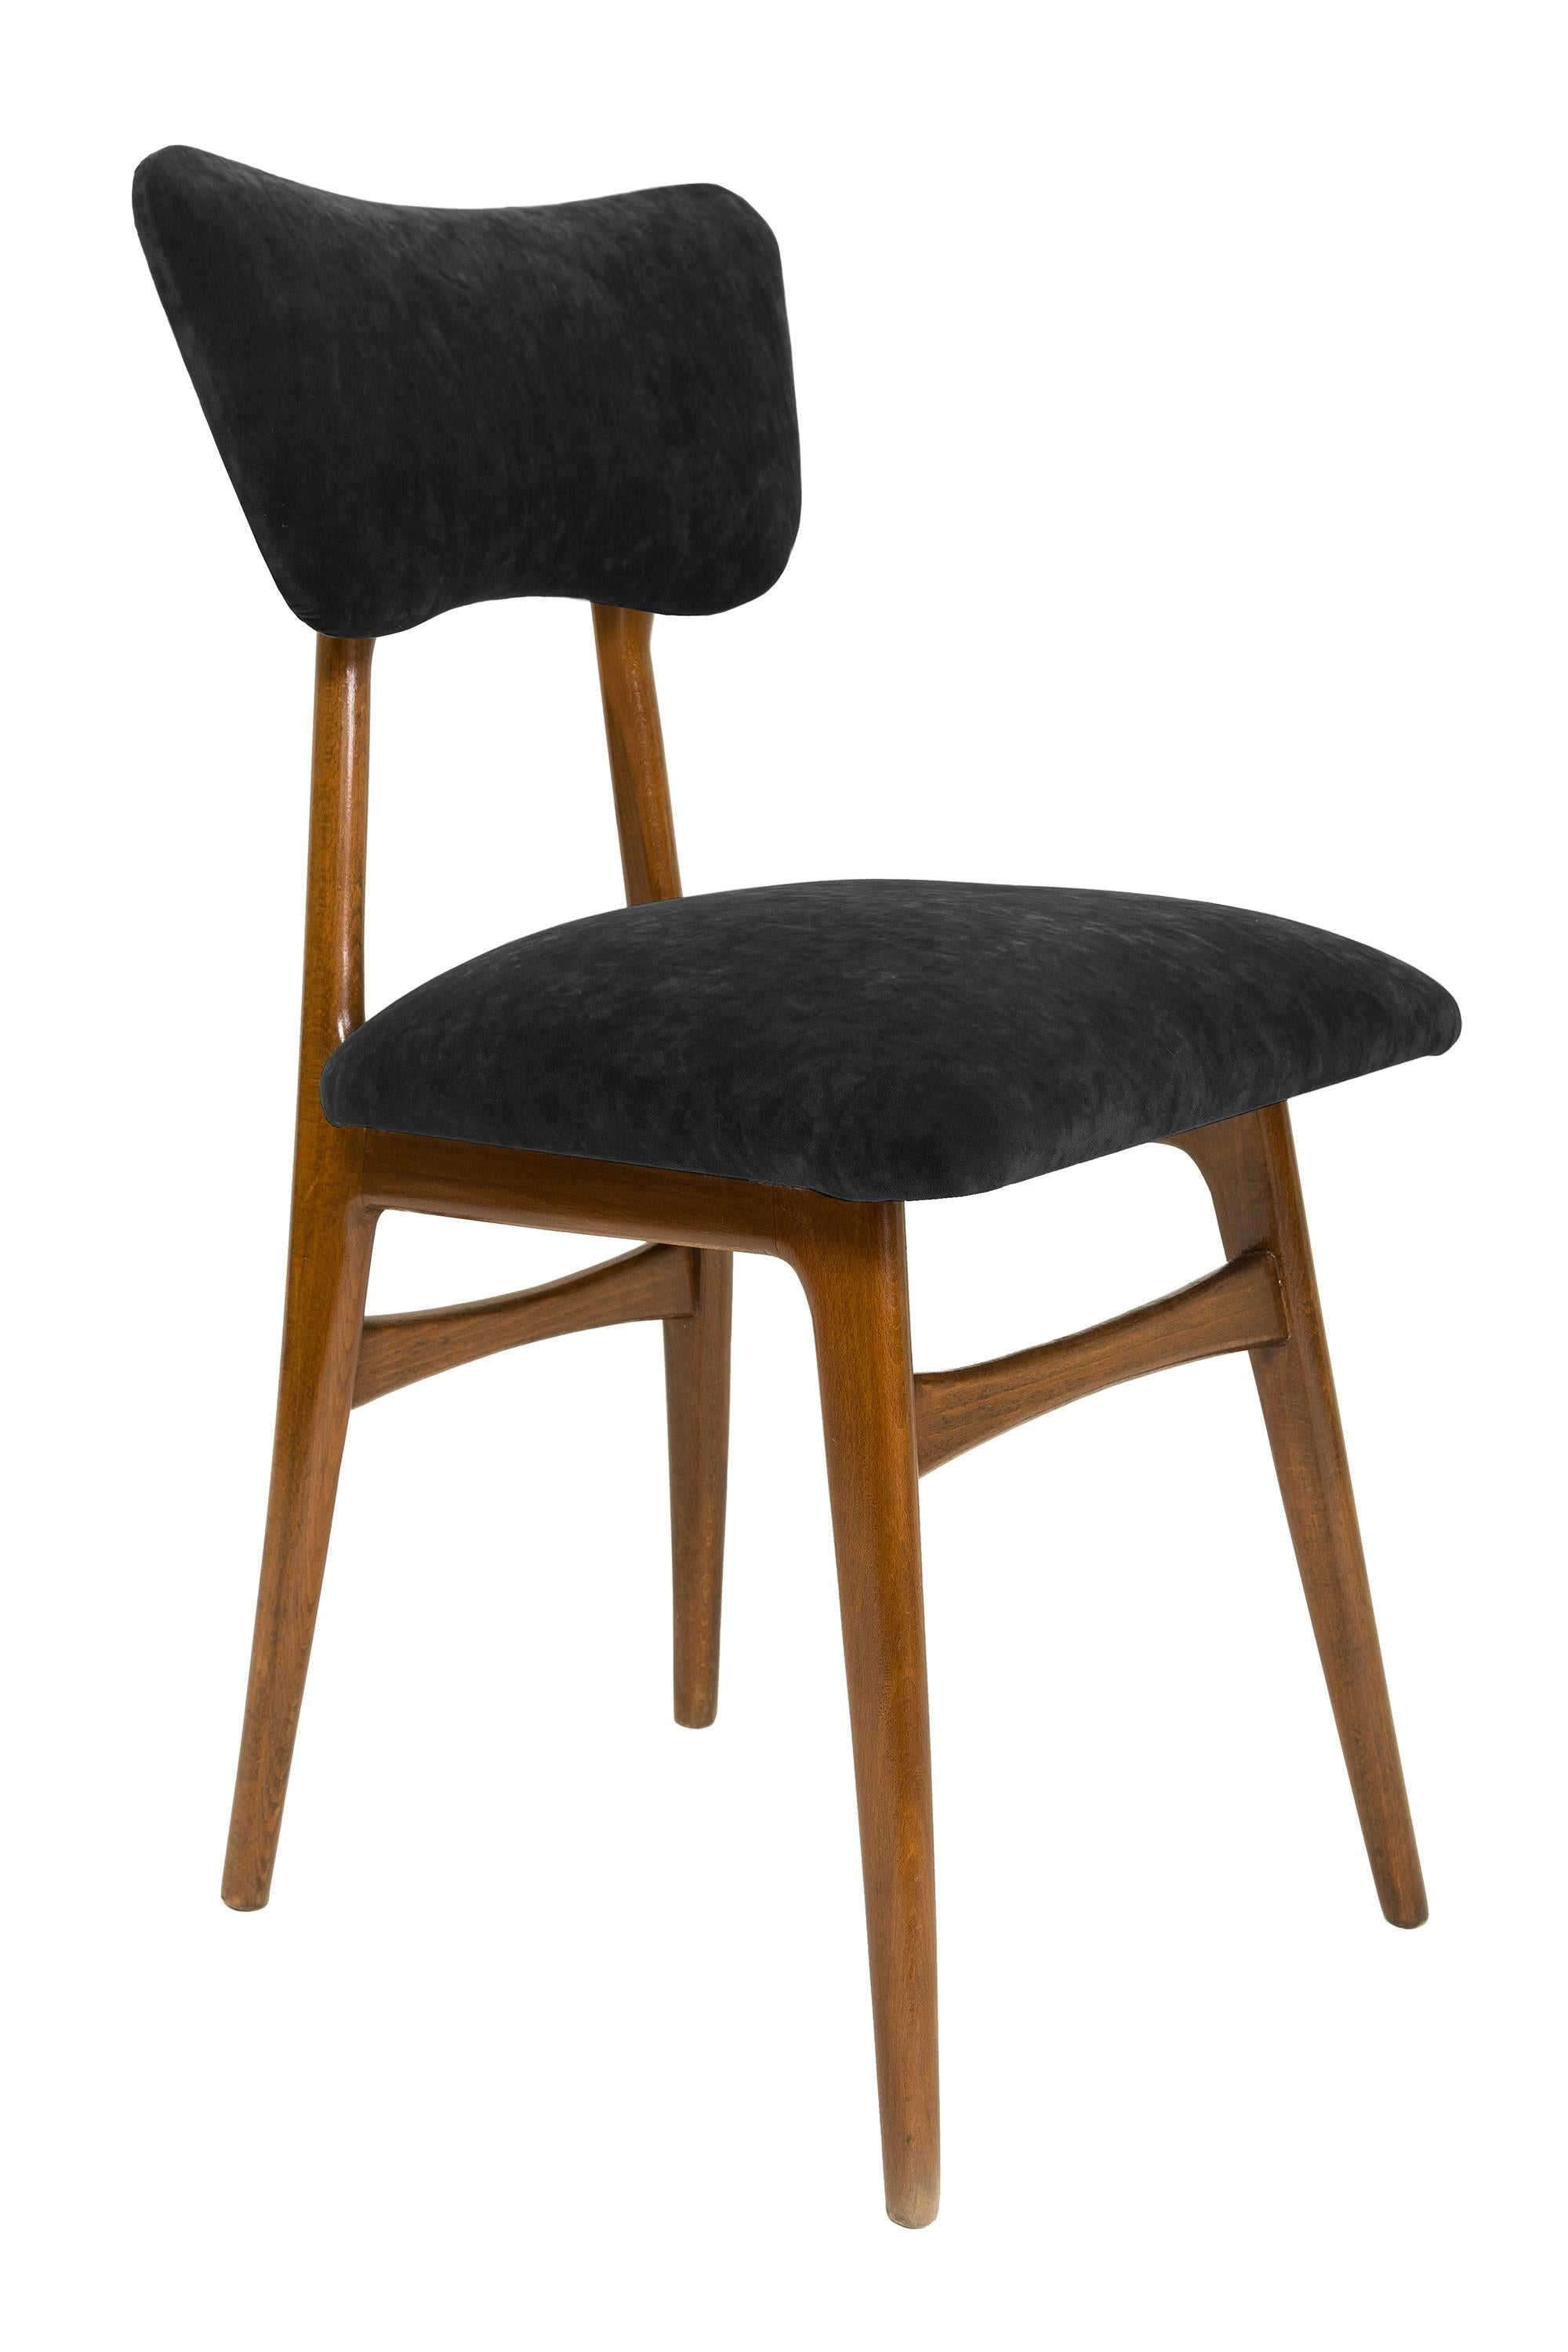 Chaises conçues par le prof. Rajmund Halas. Fabriqué en bois de hêtre. Le fauteuil a subi une rénovation complète de la tapisserie et les boiseries ont été rafraîchies. L'assise et le dossier sont habillés d'un tissu en velours vert foncé, durable